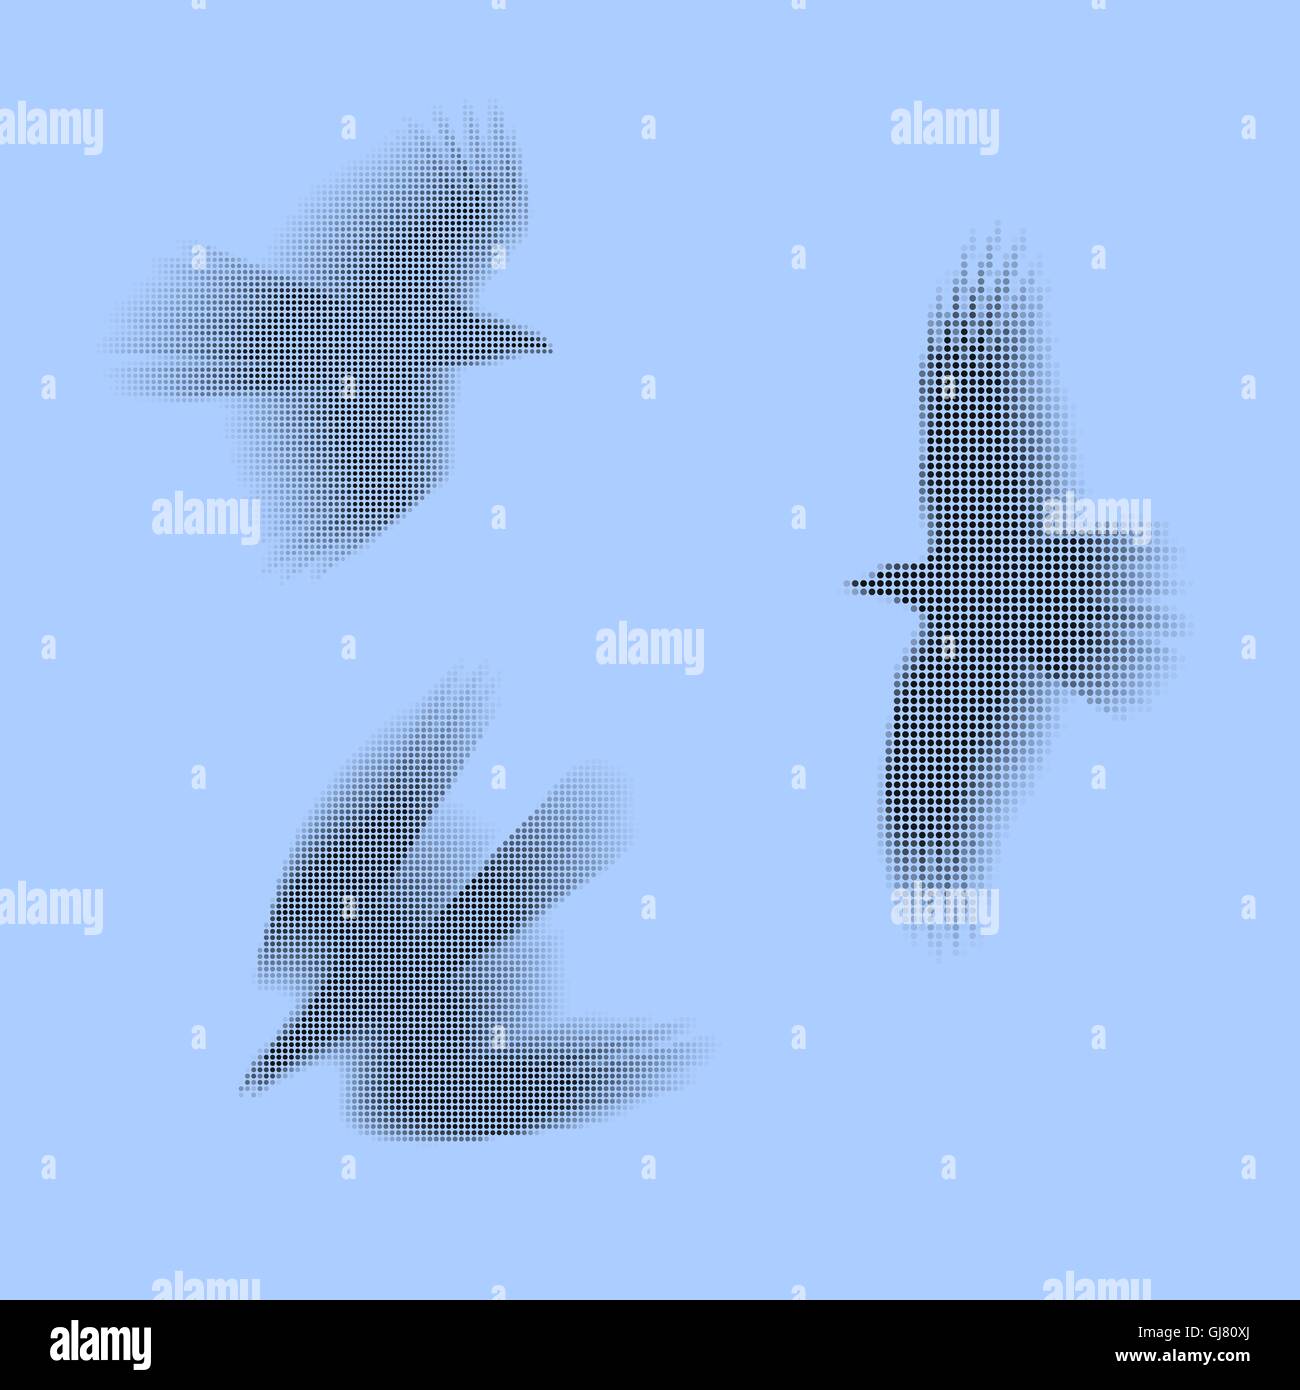 Uccelli, aquile eps vettoriali 10 illustrazione. Semplicemente fatto di pallini nero e grigio. Concetto di veloce e libera circolazione. Illustrazione Vettoriale